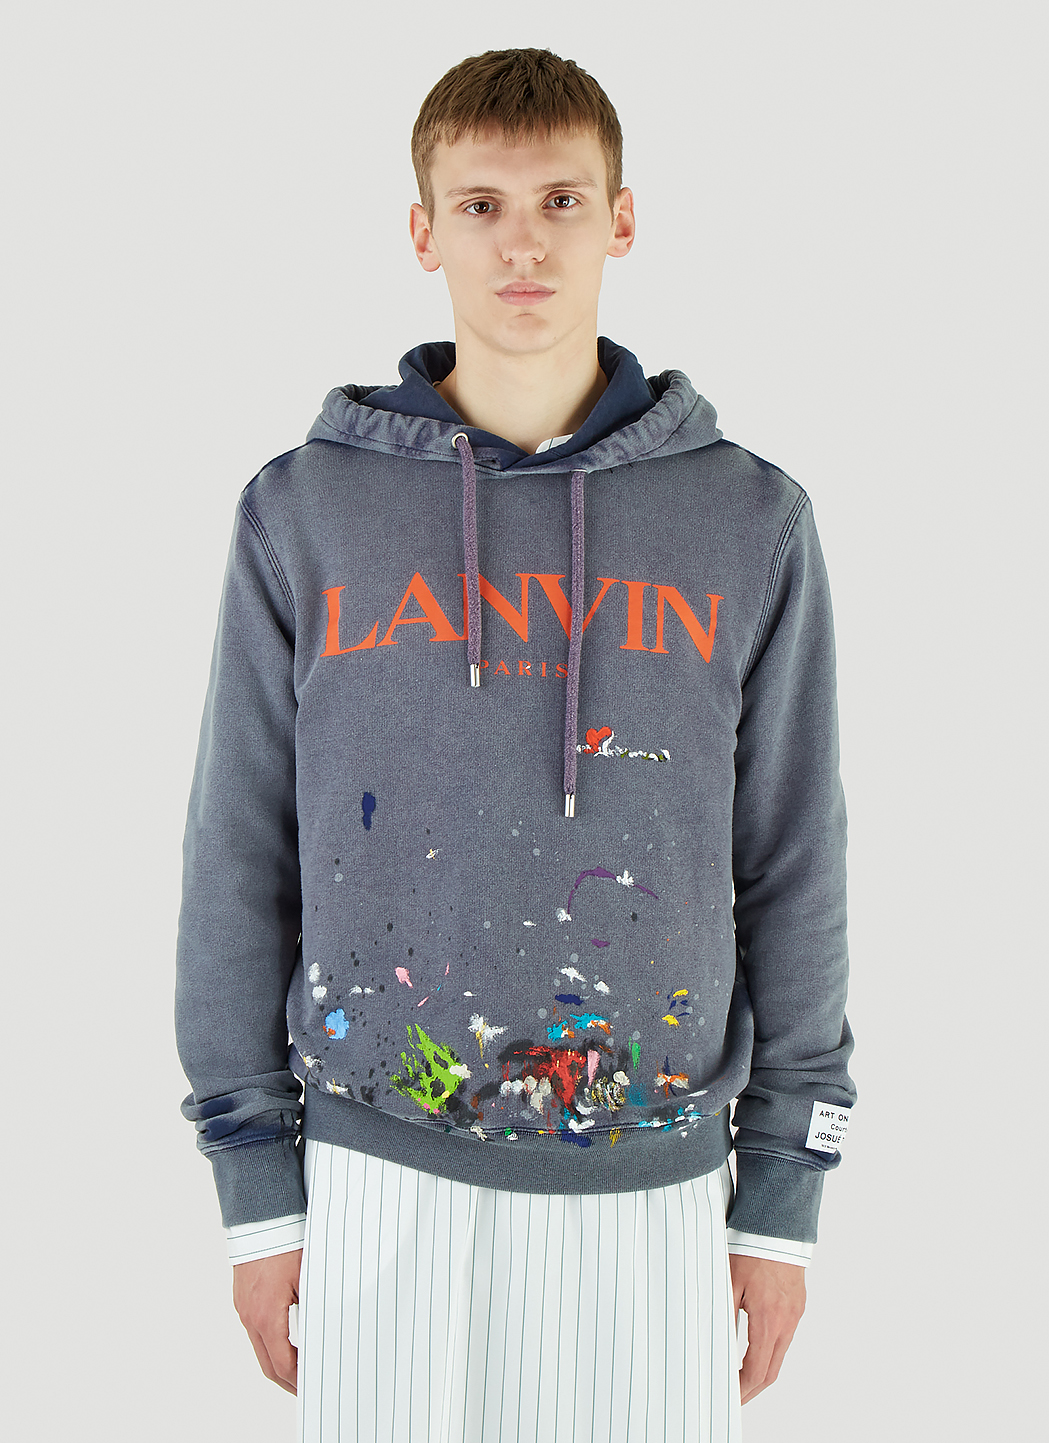 Lanvin X Gallery Dept. Men's Splatter Hooded Sweatshirt in Blue | LN-CC